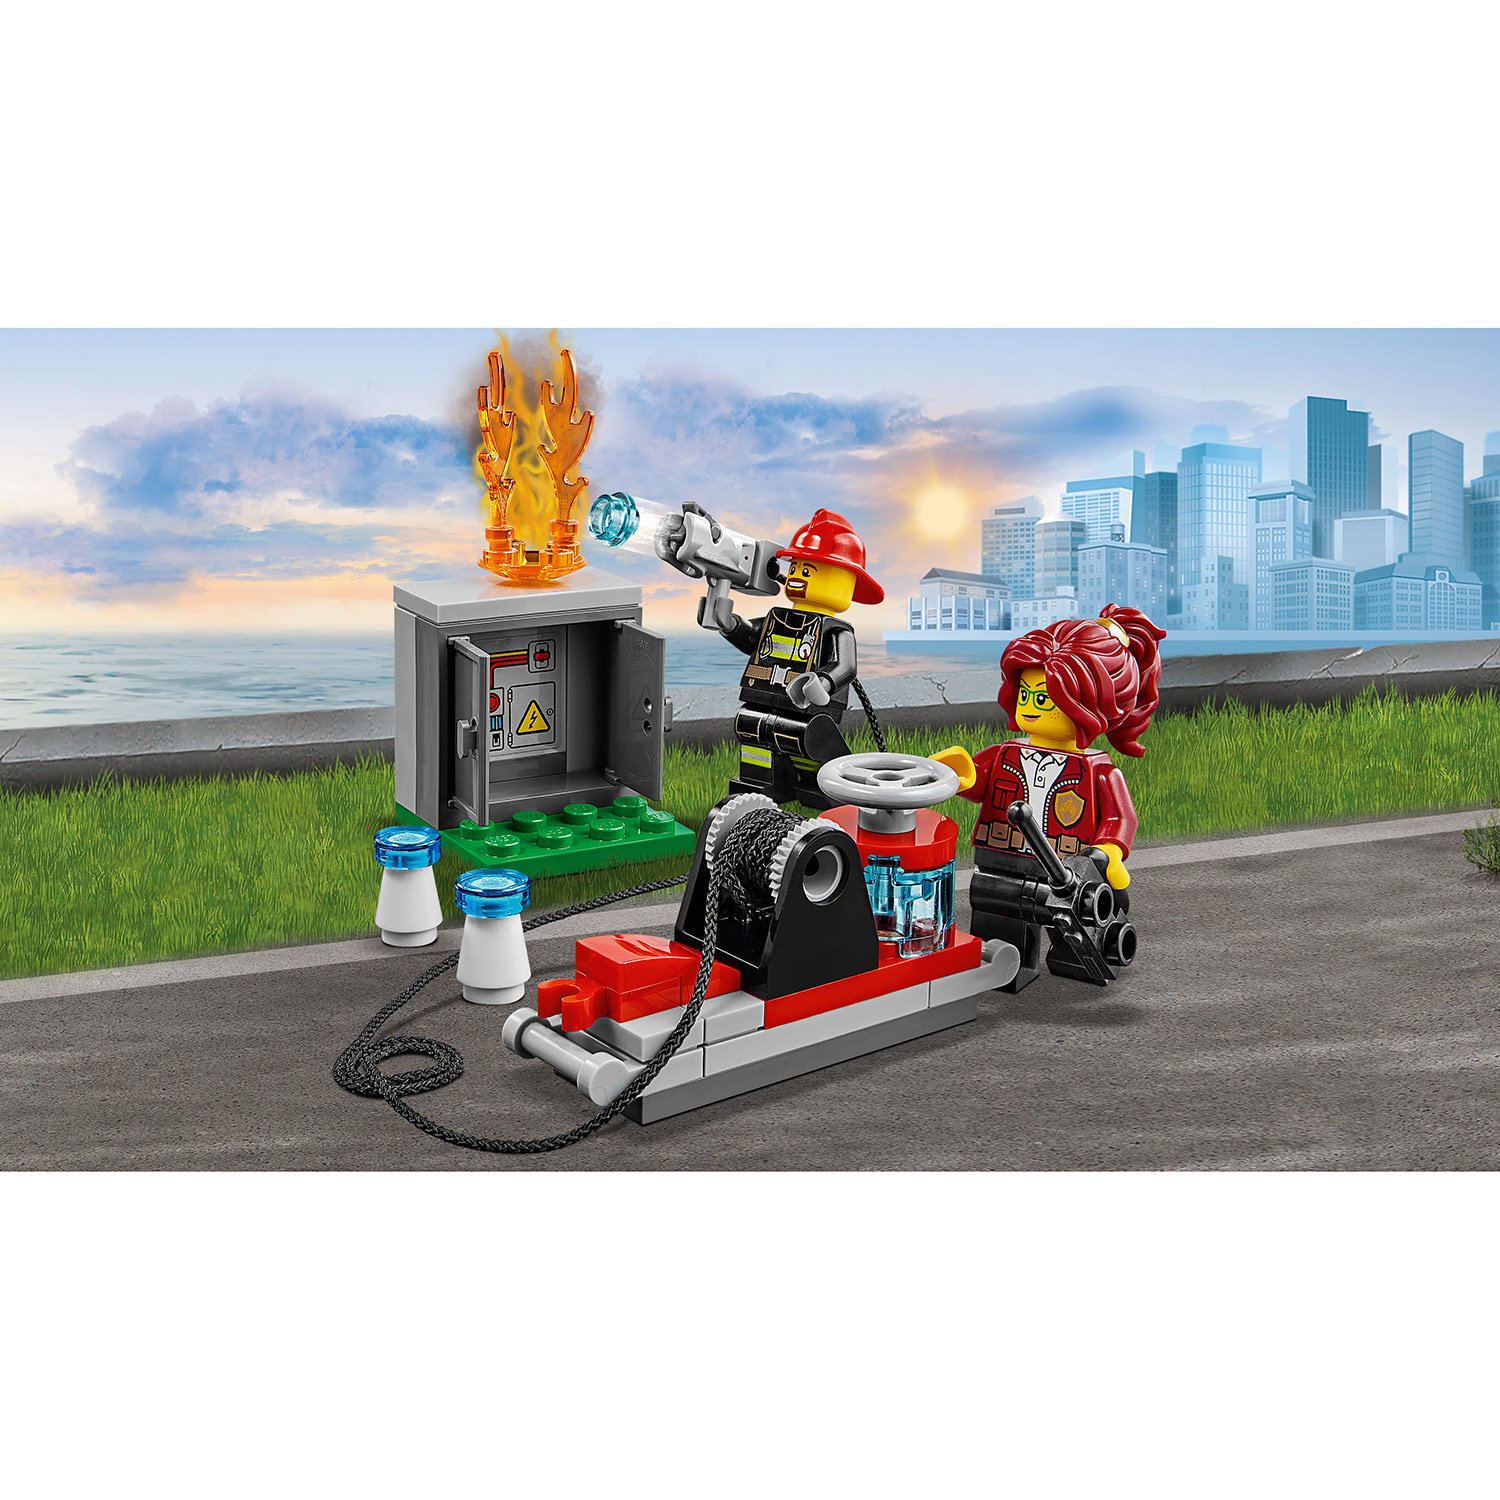 Lego City 60231 Грузовик начальника пожарной охраны